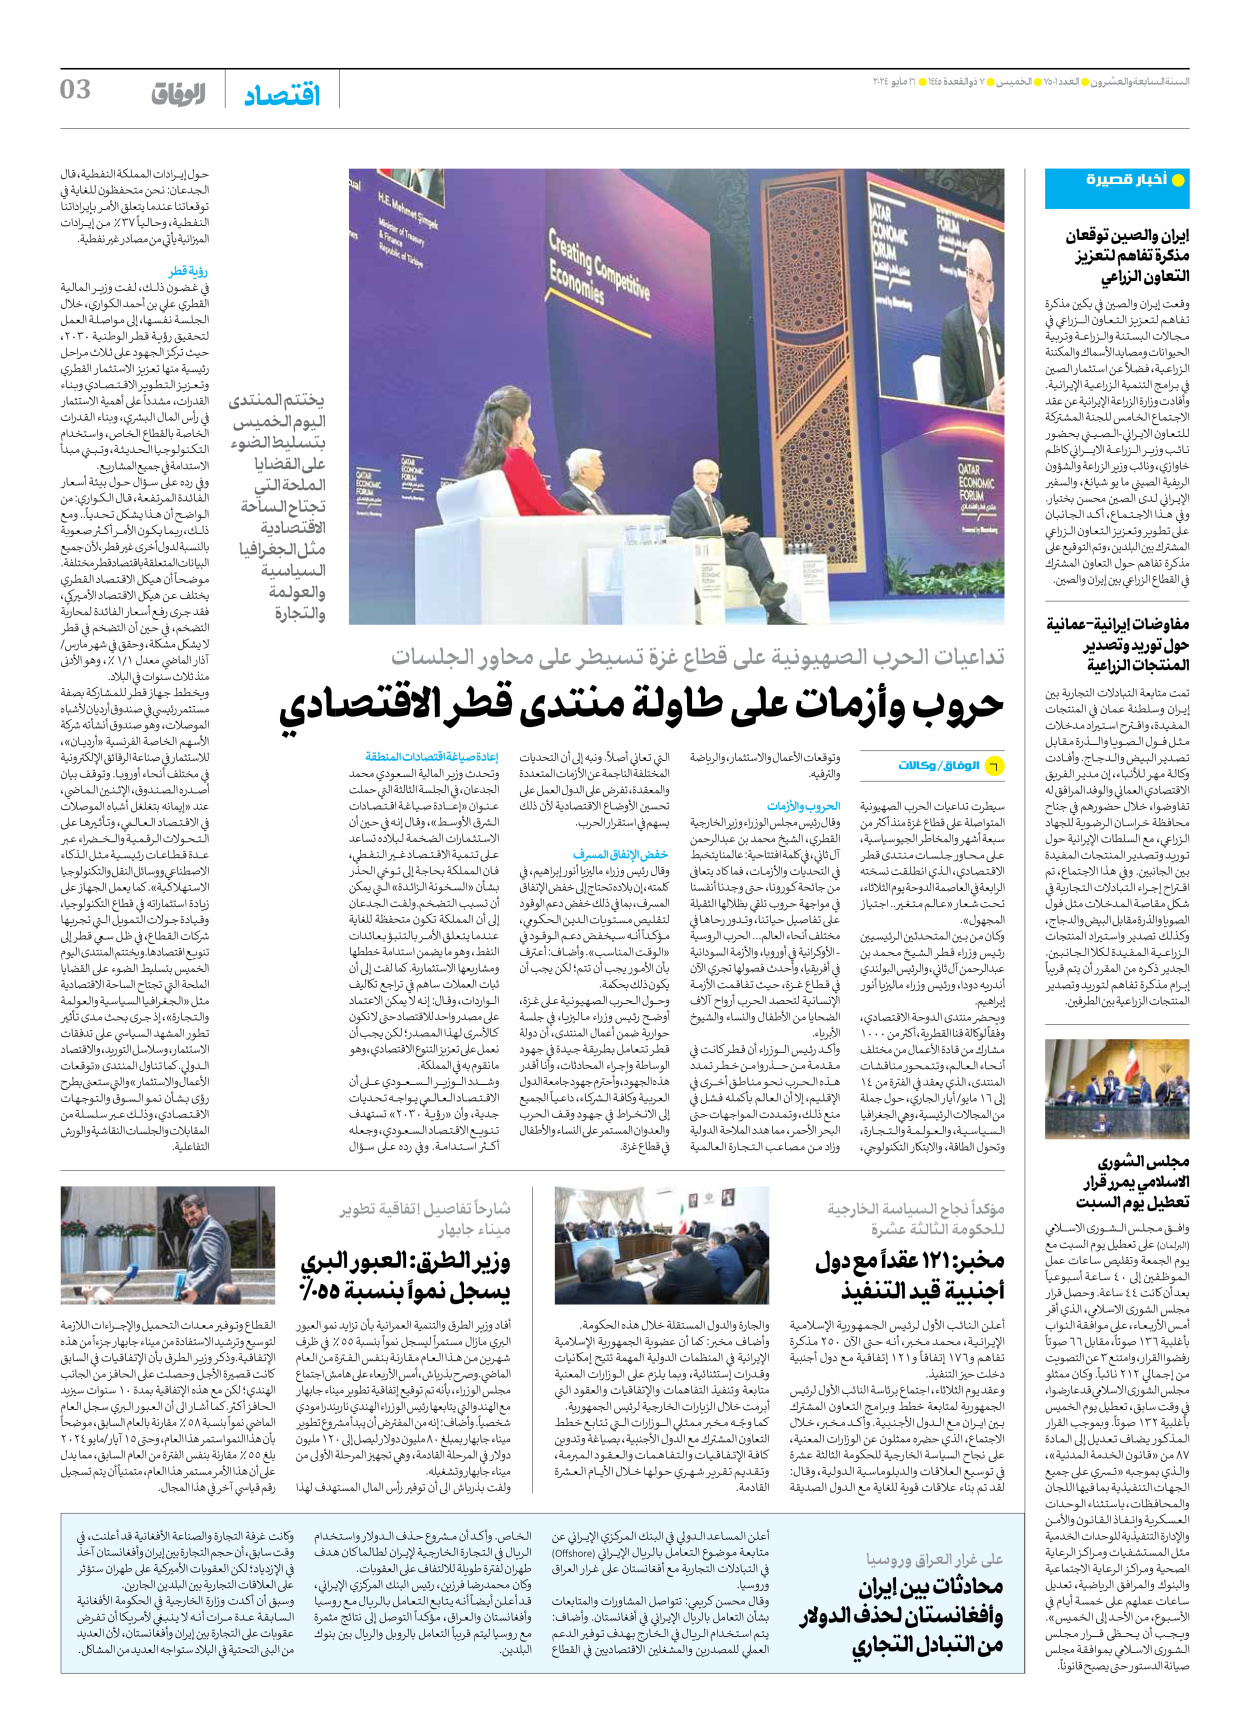 صحیفة ایران الدولیة الوفاق - العدد سبعة آلاف وخمسمائة وواحد - ١٦ مايو ٢٠٢٤ - الصفحة ۳